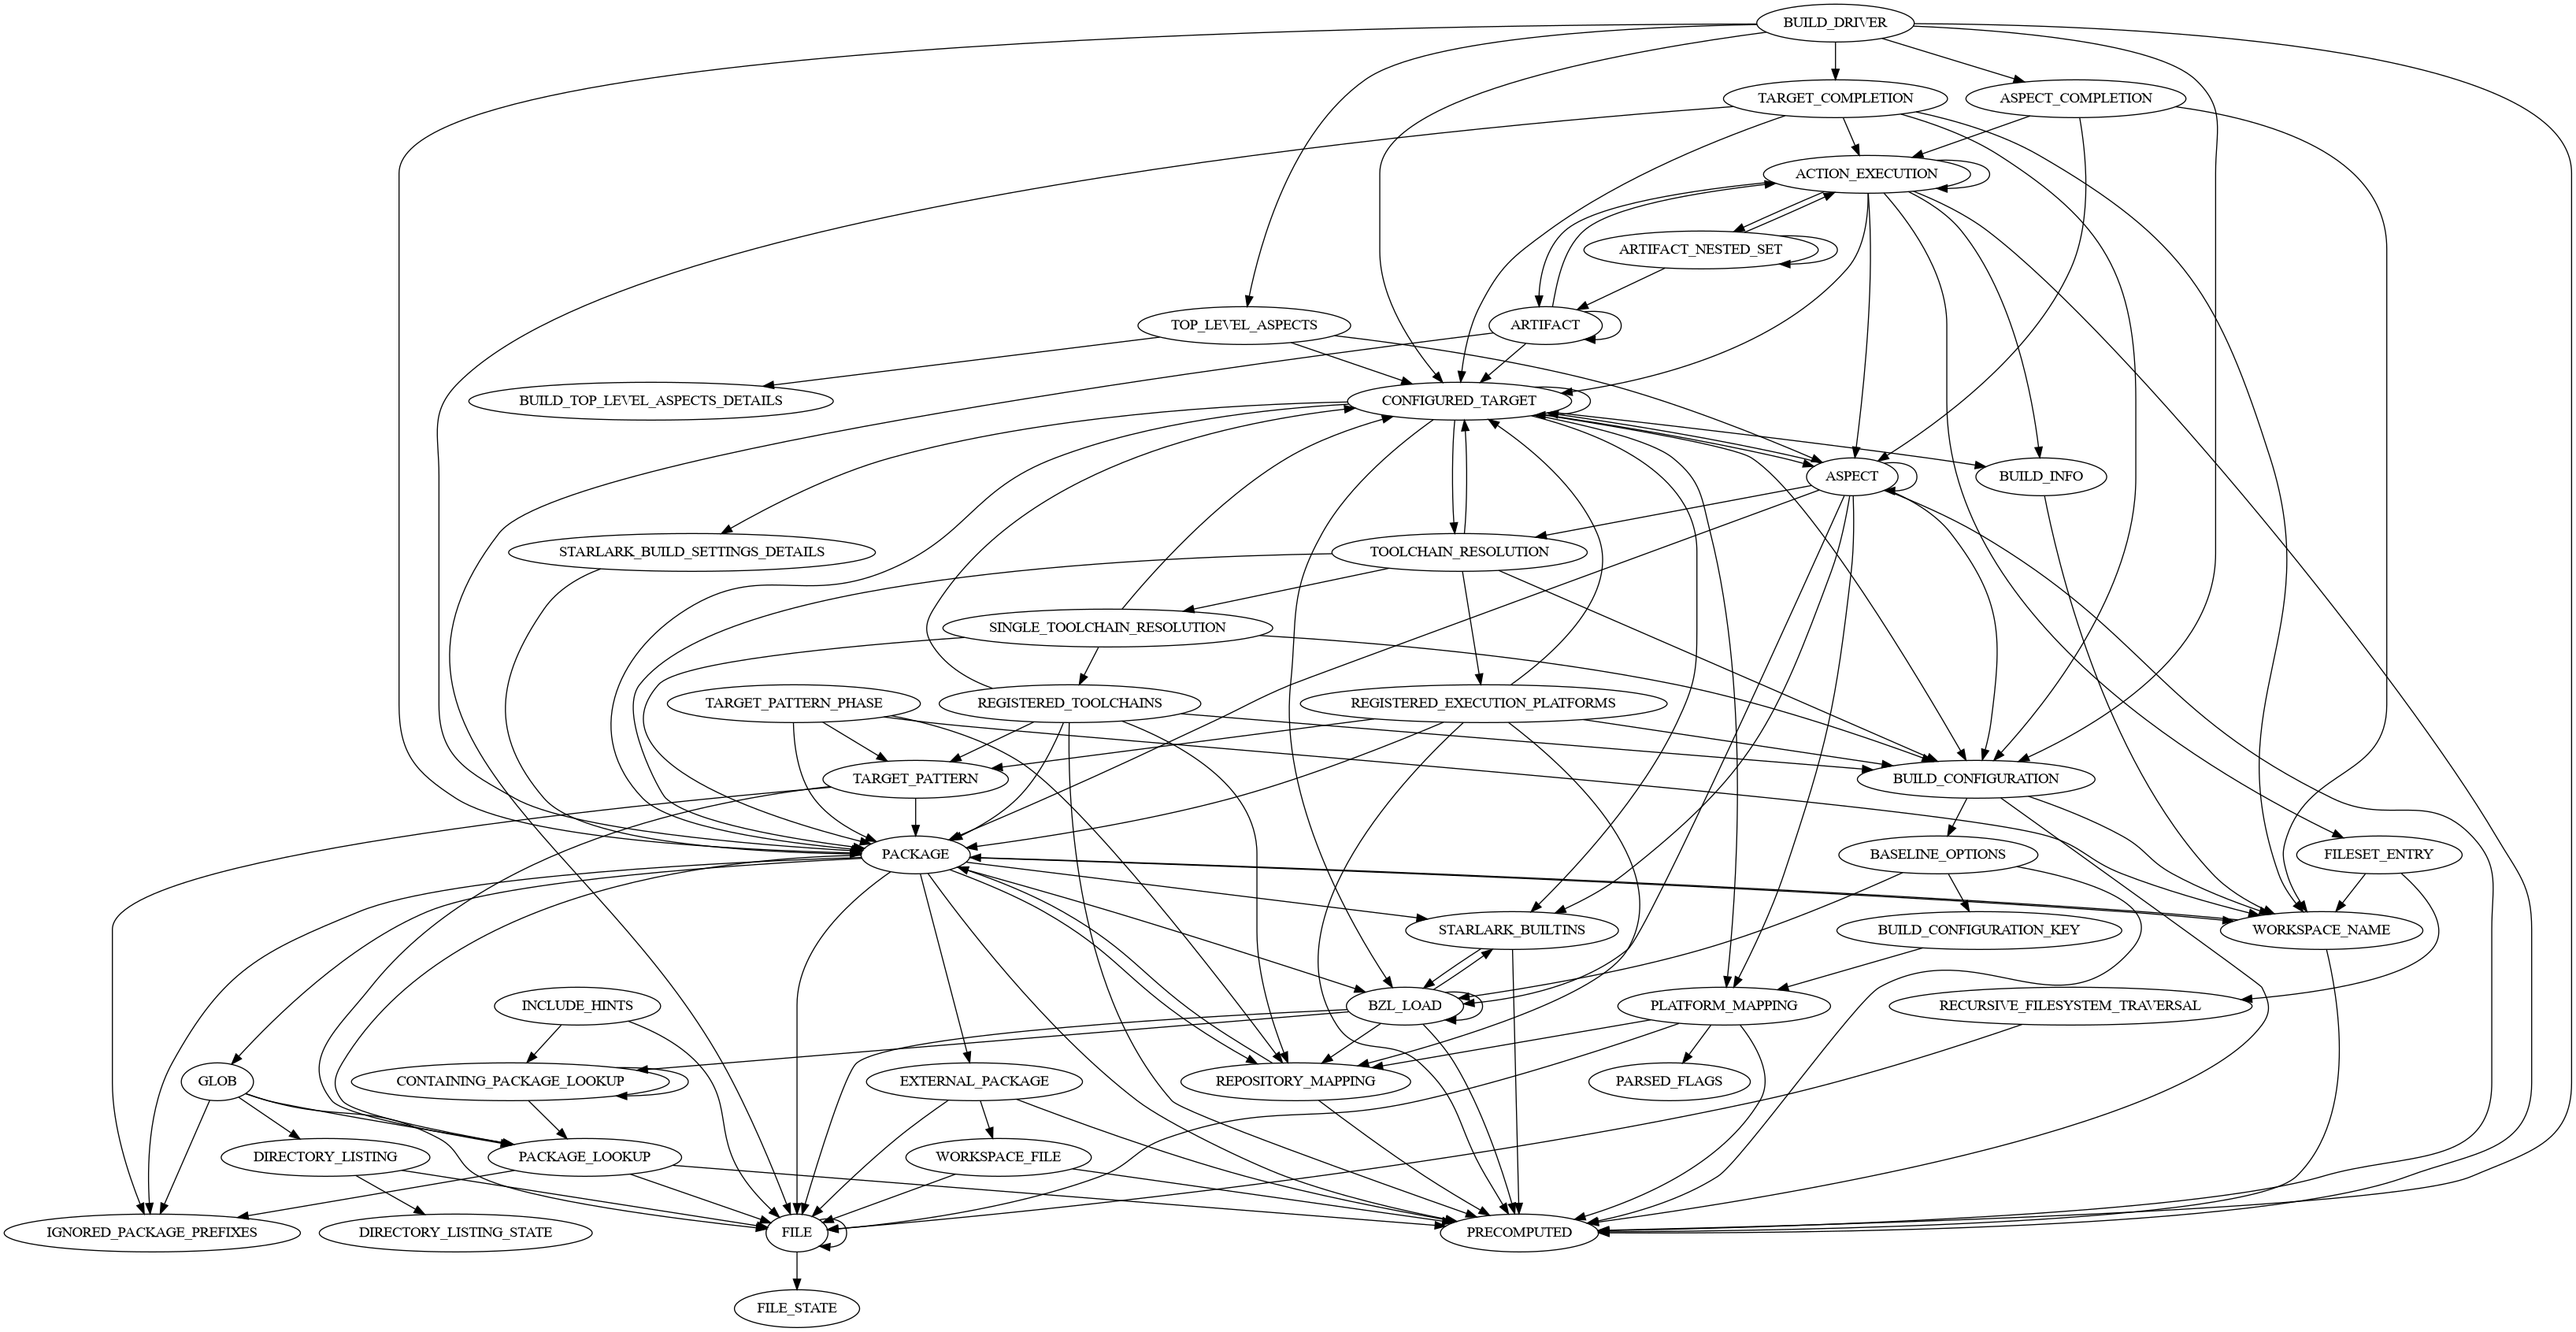 Grafik hubungan implementasi SkyFunction